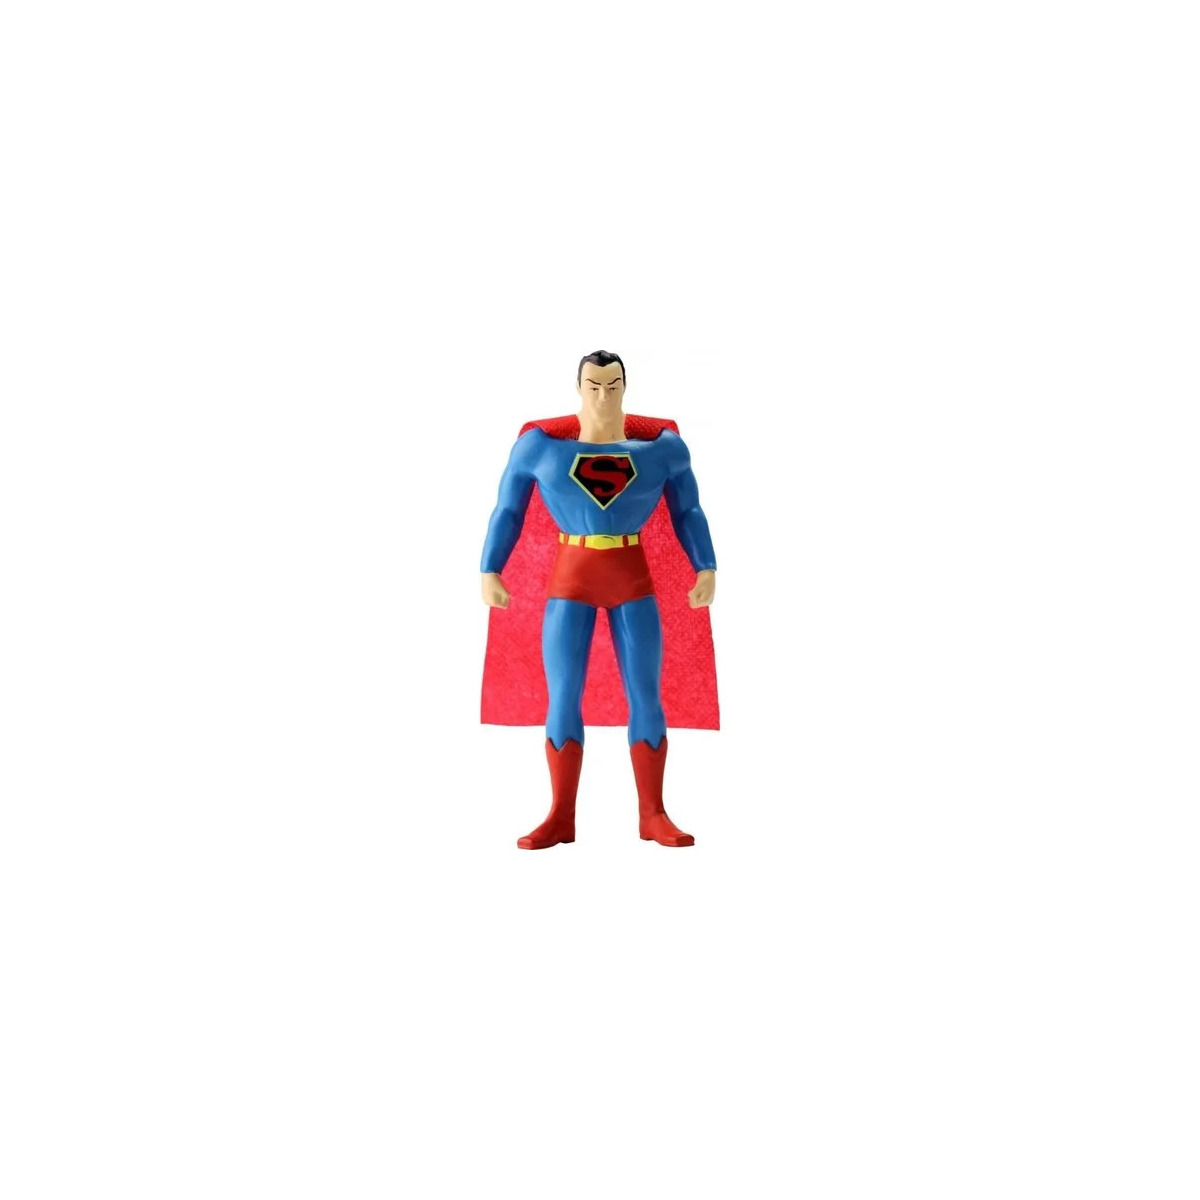 Superman New Frontier 5.5' Bükülebilir Figür